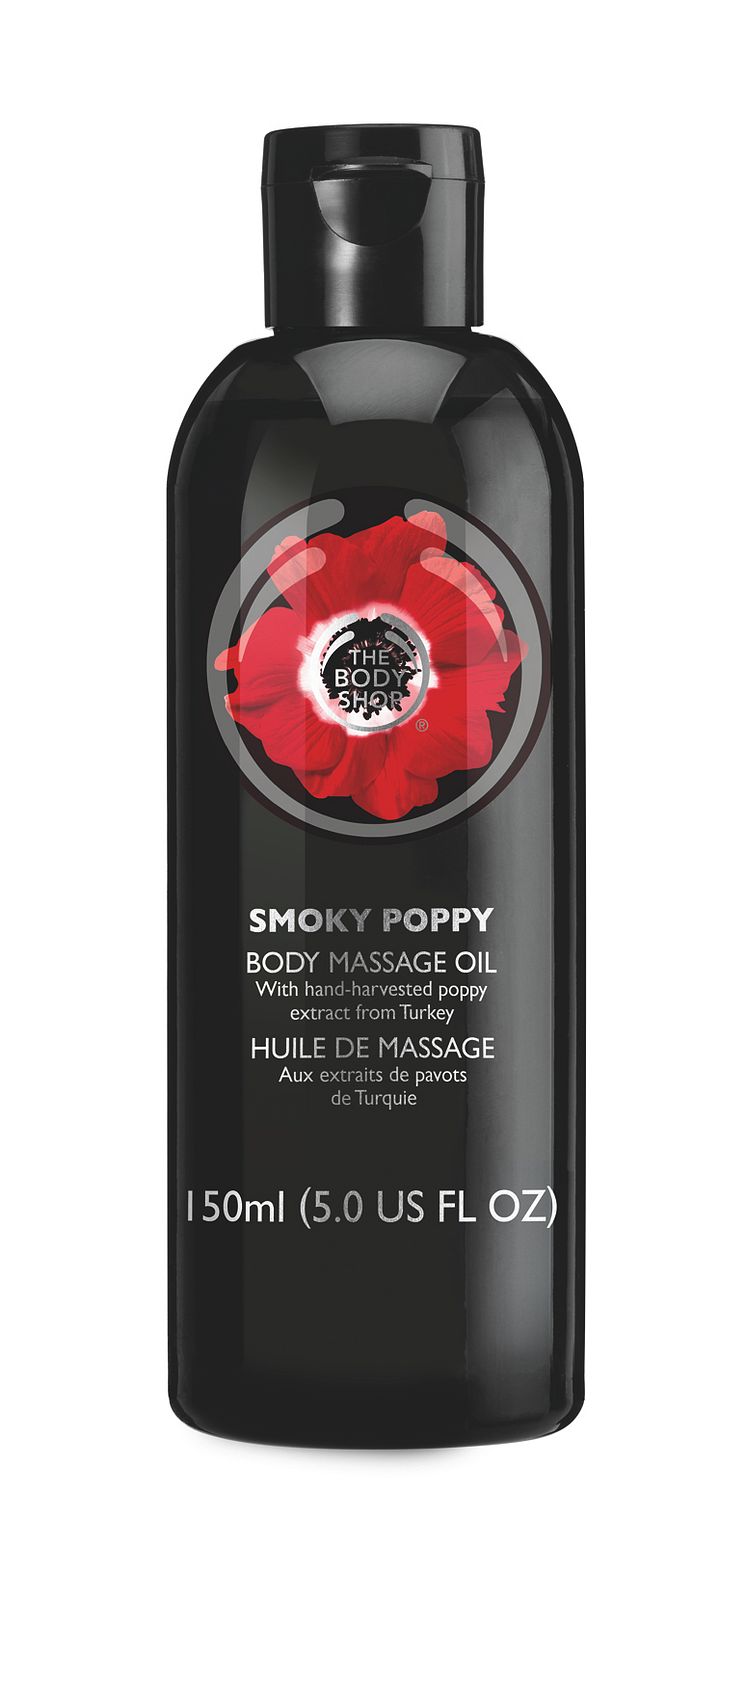 Smoky Poppy Body Massage Oil